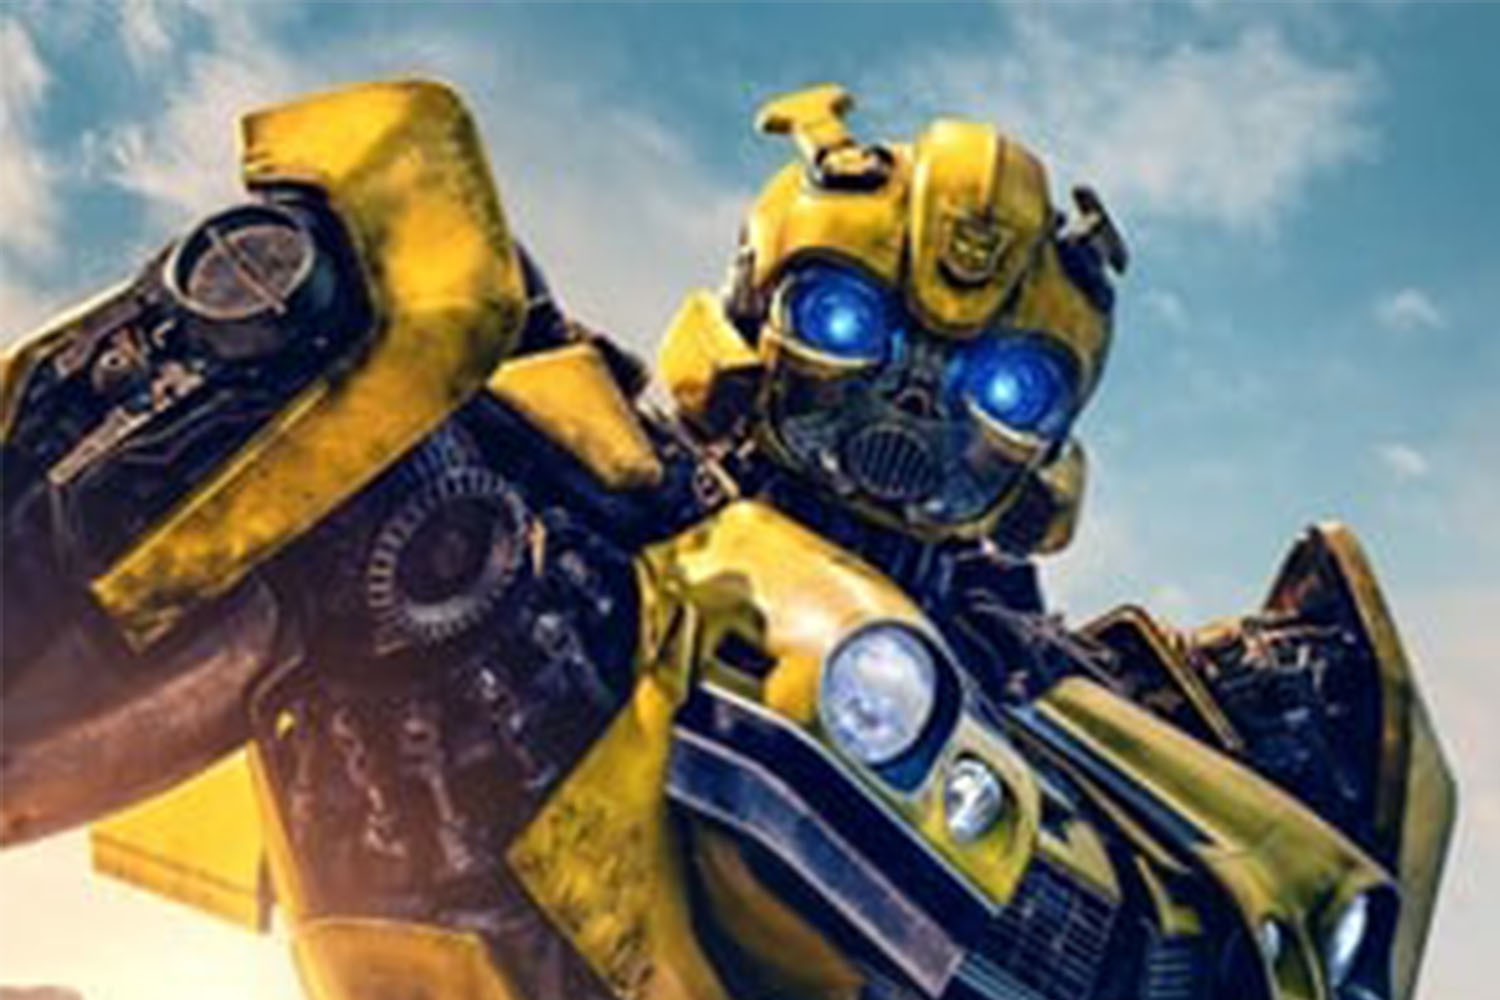 Blog do Cavalo Atômico: QUANTOS CONSTRUCTICONS APARECEM NOS FILMES? -  Universo Transformers com Fritzolino